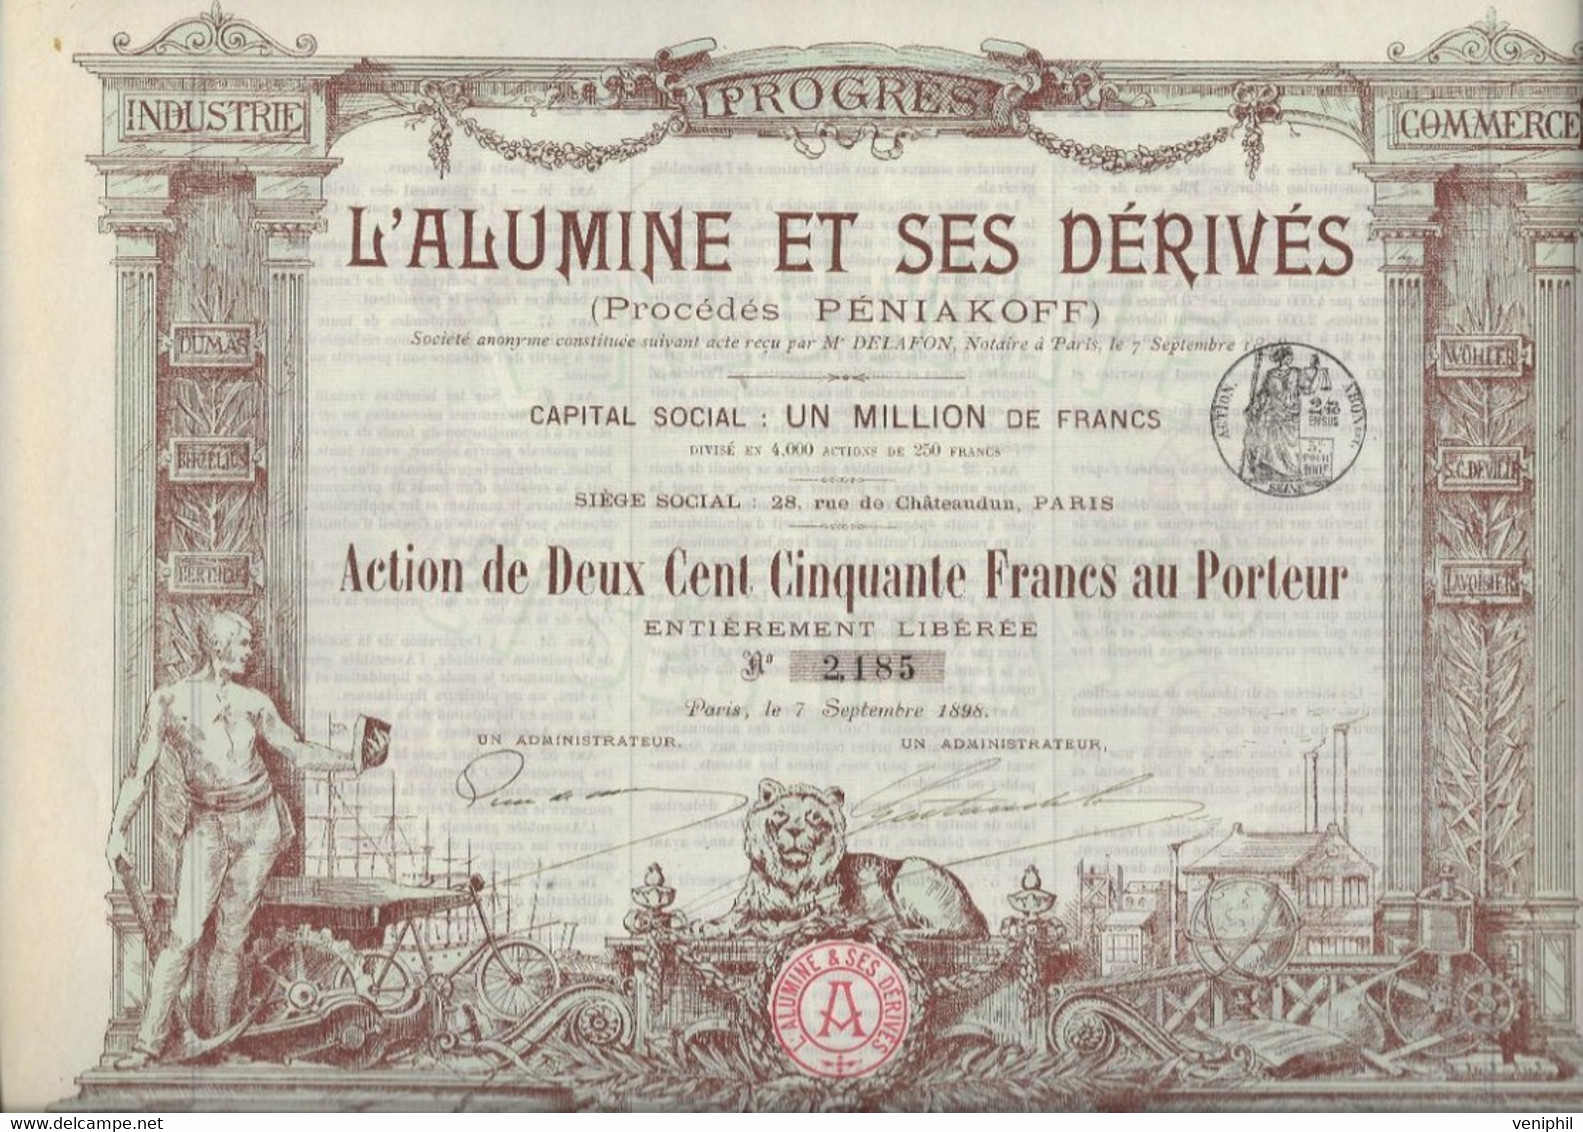 L'ALUMINE ET SES DERIVES -PROCEDE PENIAKOFF - DIVISE EN 4000 ACTIONS DE DEUX CENT CINQUANTE FRANCS -ANNEE 1898 - Mijnen